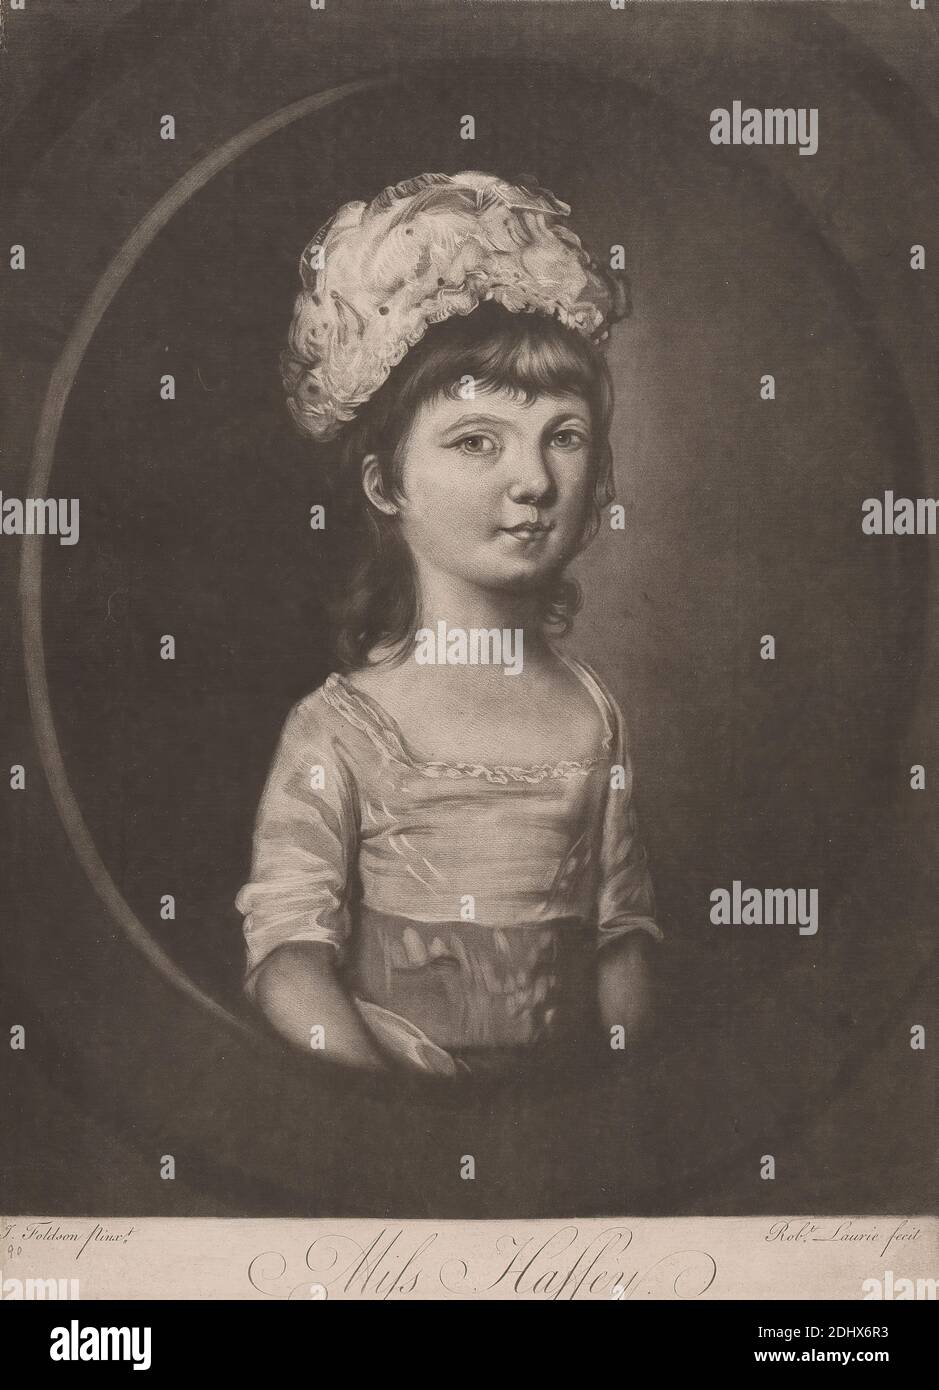 Miss Haffey, Robert Laurie, XVIII secolo-XIX secolo, 1755?–1836, britannico, dopo artista sconosciuto, ( Foldson ), non datato, Mezzotint Foto Stock